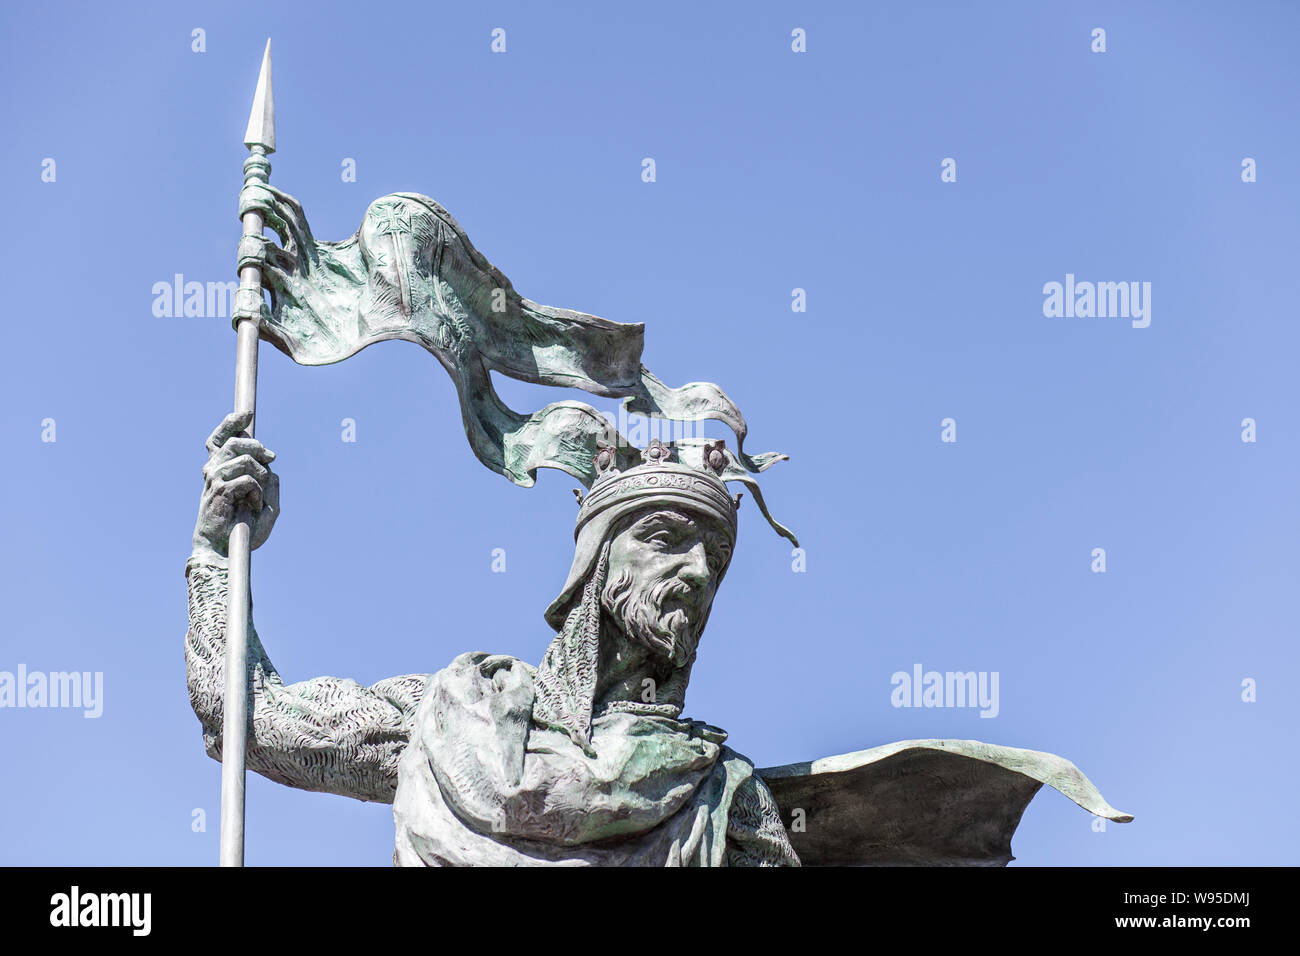 León, España - Junio 25th, 2019: Alfonso IX, Siglo XII, rey de León y Galicia. Monumento en la plaza de Santo Martino, León, España. Esculpida por Estanisla Foto de stock